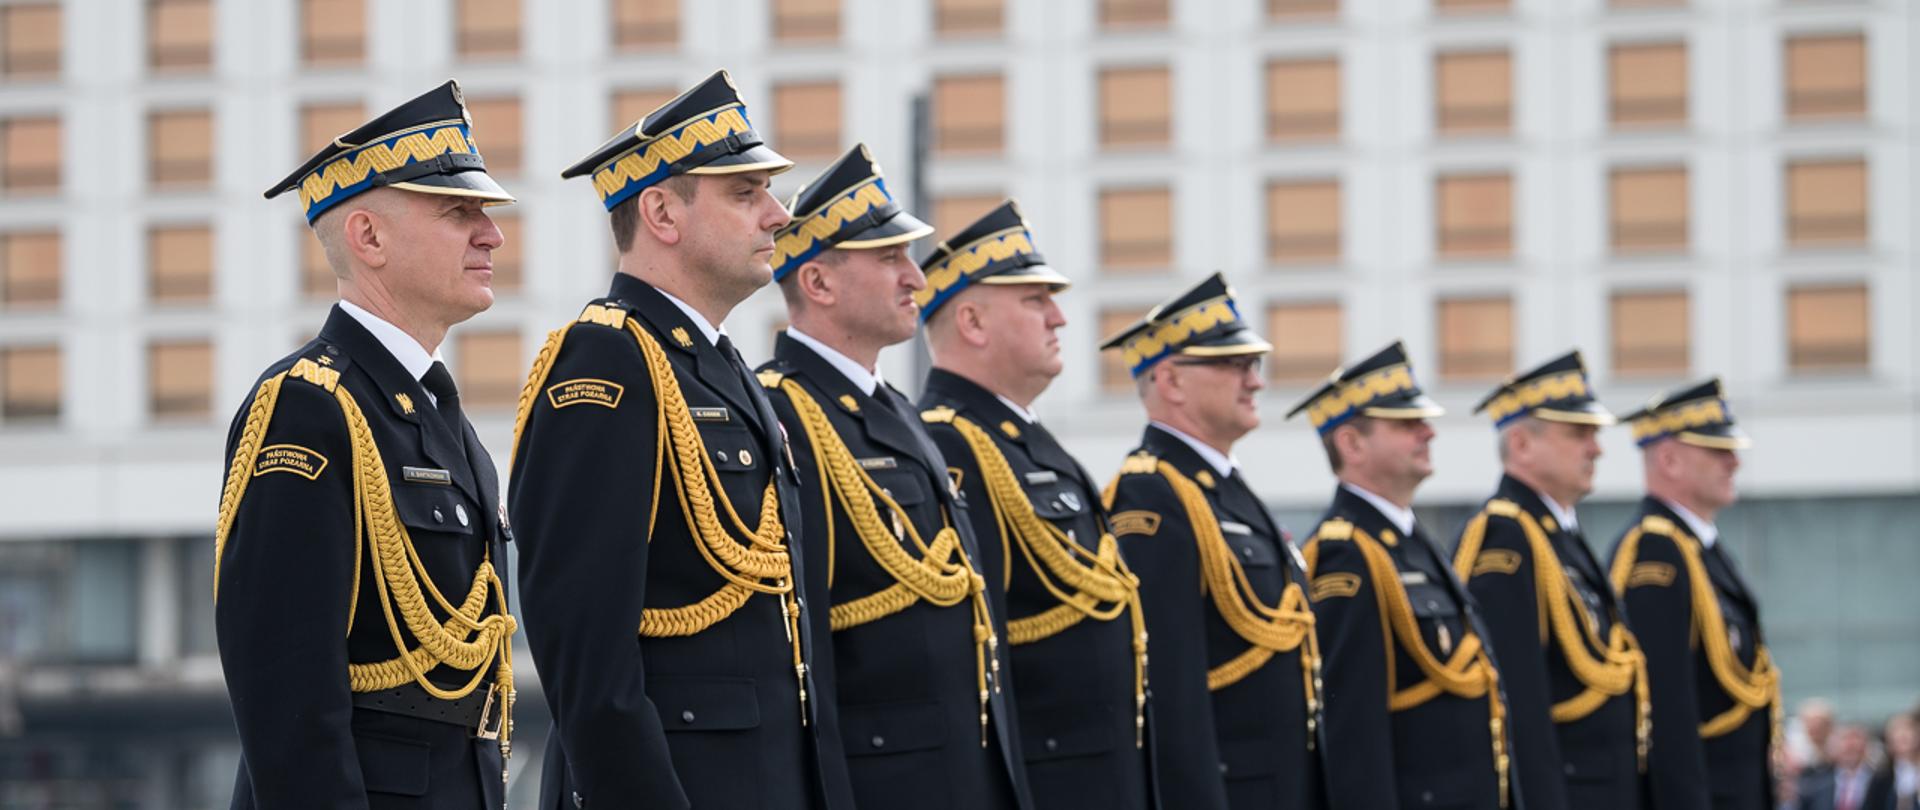 Na zdjęciu widzimy 8 mężczyzn w mundurach generalskich ustawionych w szeregu.